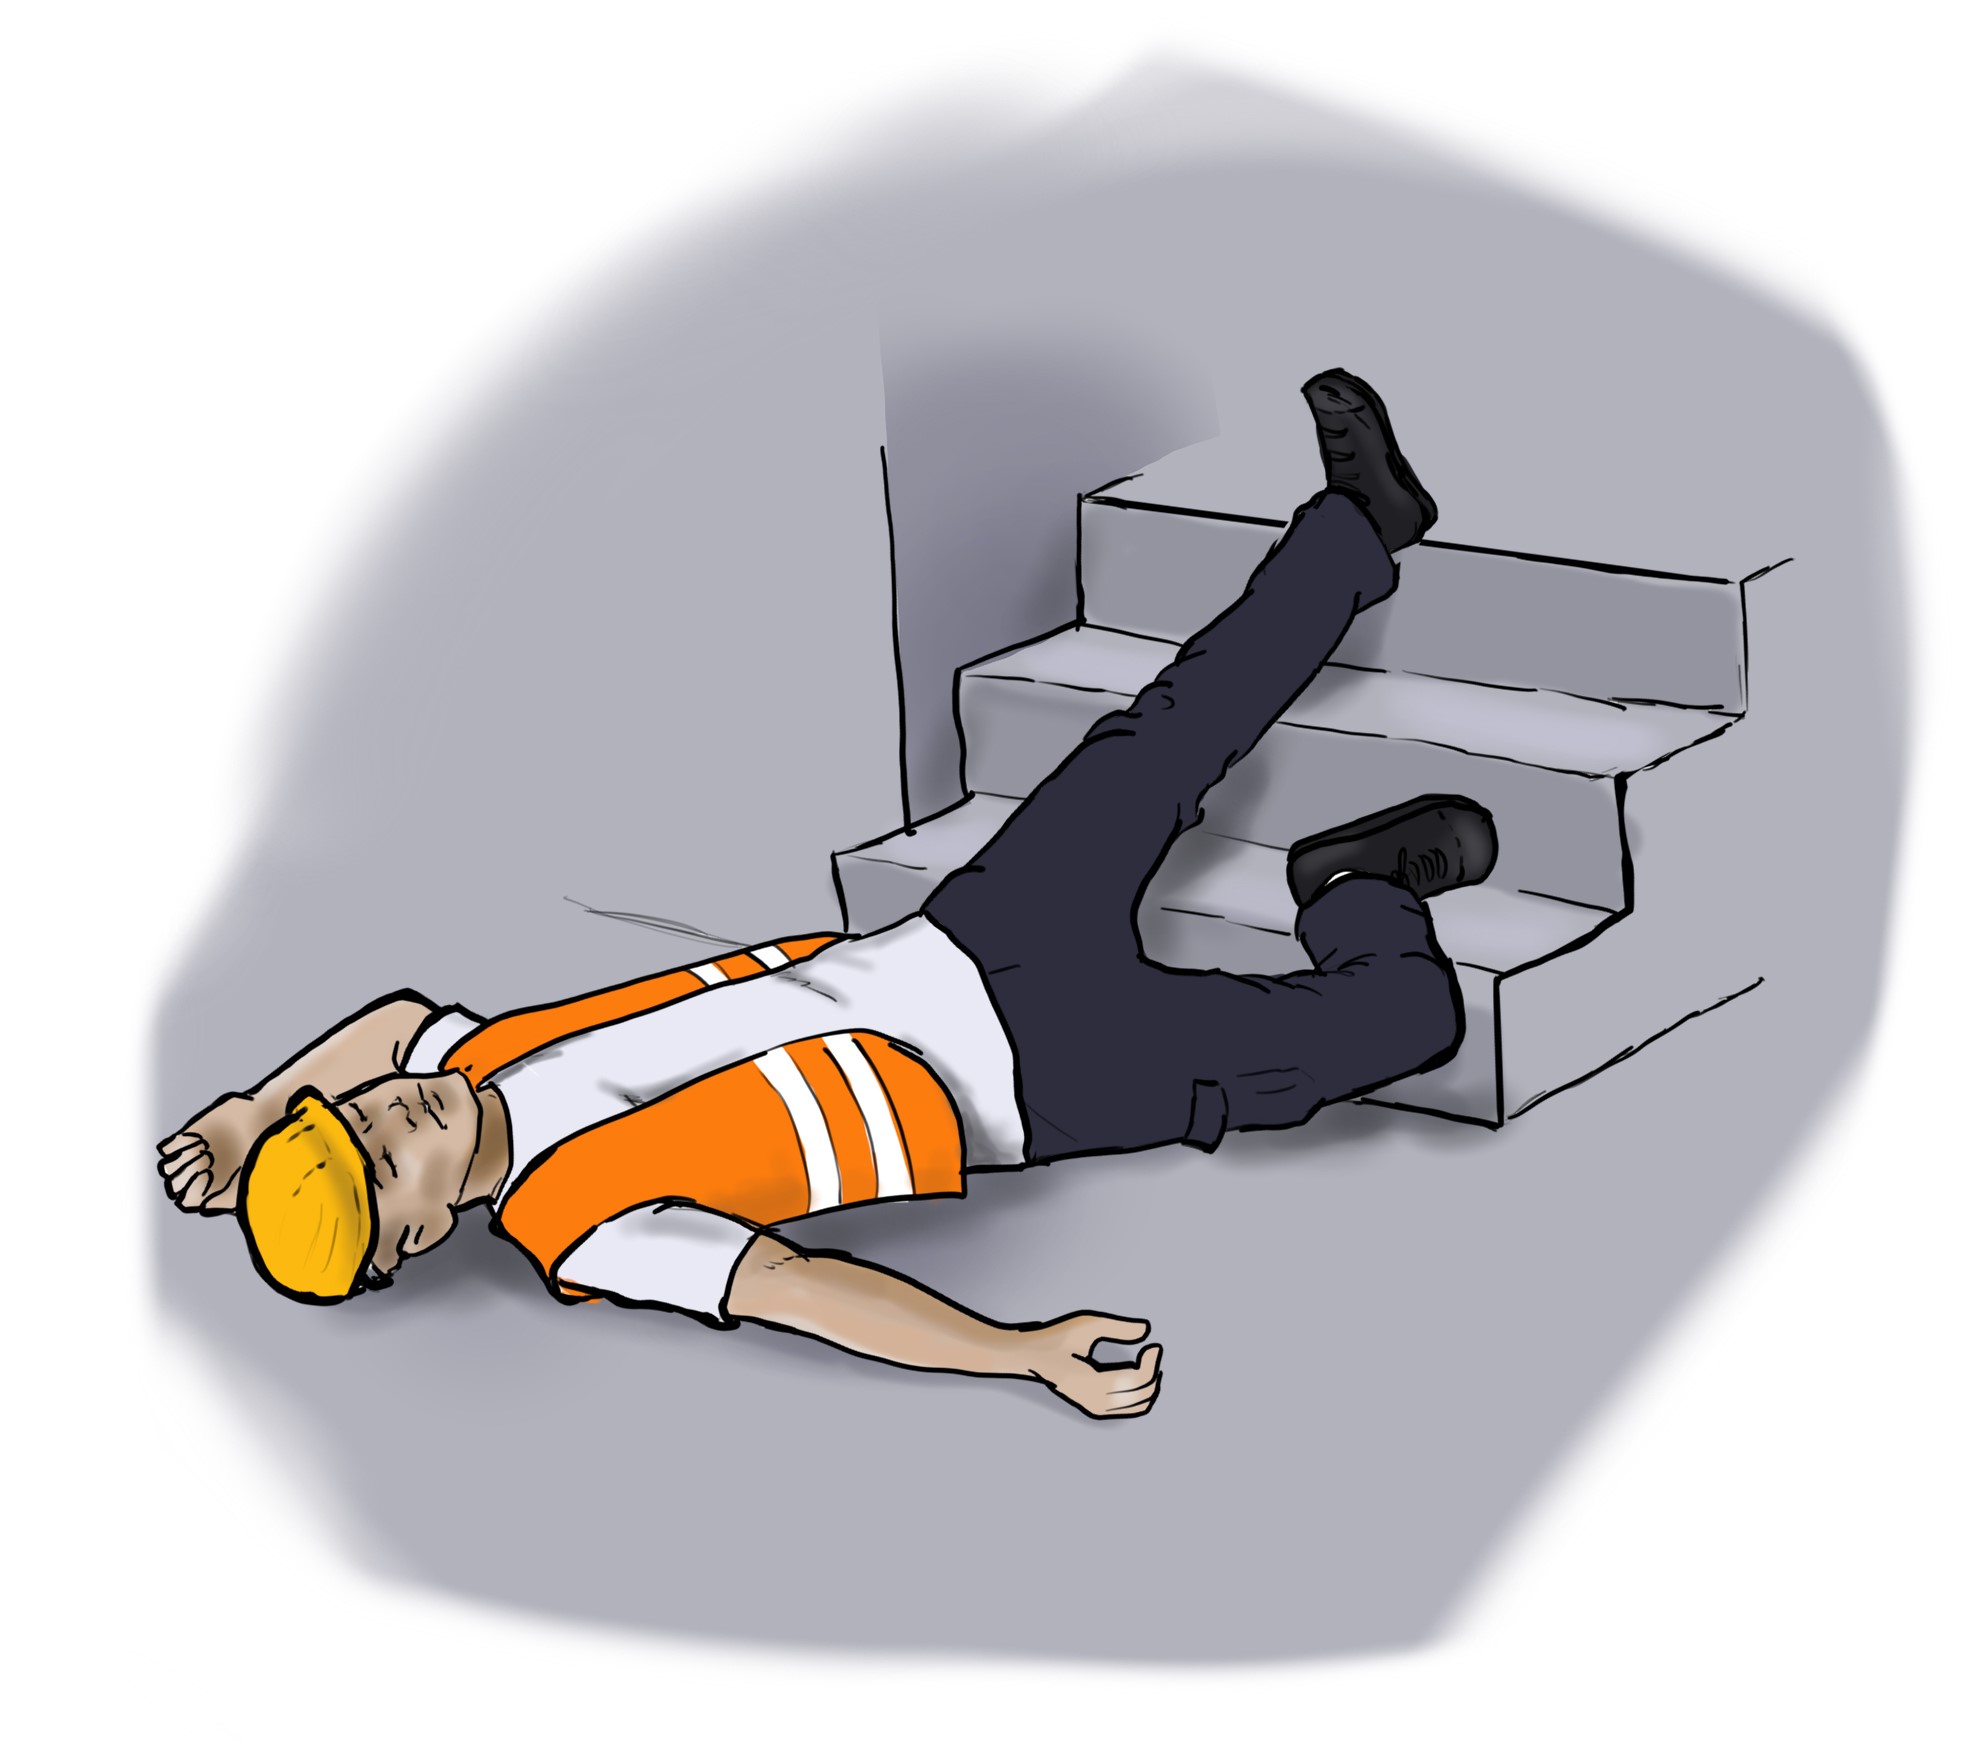 ein Mann in Arbeitskleidung (gelber Schutzhelm und orangene Warnweste mit Leuchtstreifen) liegt am unteren Ende einer Treppe auf dem Boden, er ist zuvor gestürzt und scheint bewusstlos zu sein.